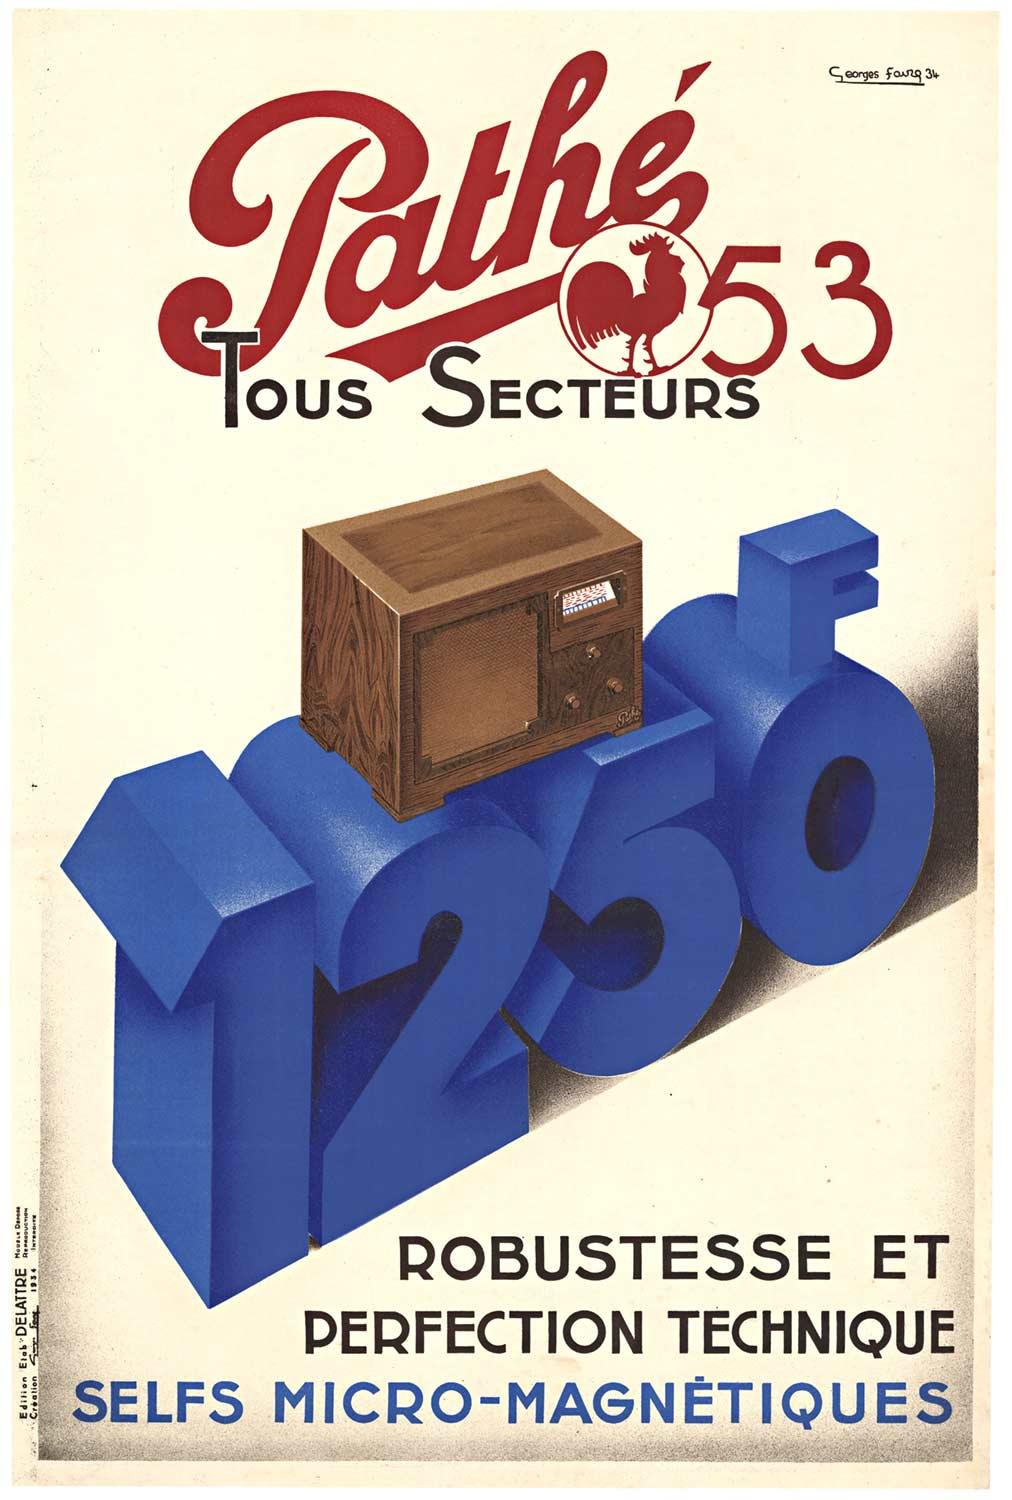 Georges Faure Print - Original "Pathe 53 Tous Secteurs" vintage French art deco radio poster